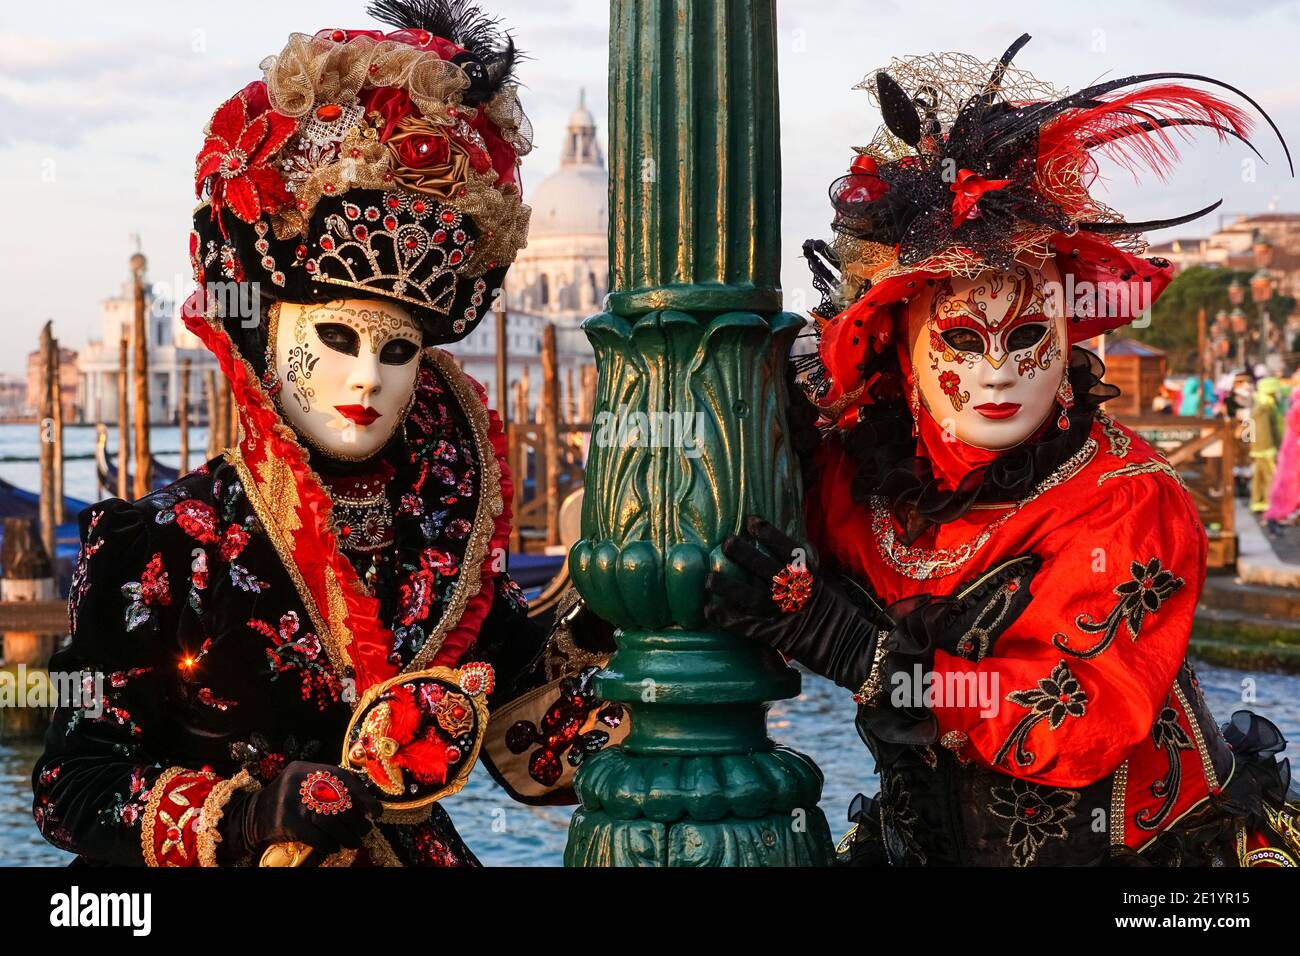 Zwei Frauen in traditionell dekorierten Kostümen und bemalten Masken während des Karnevals in Venedig, Italien Stockfoto